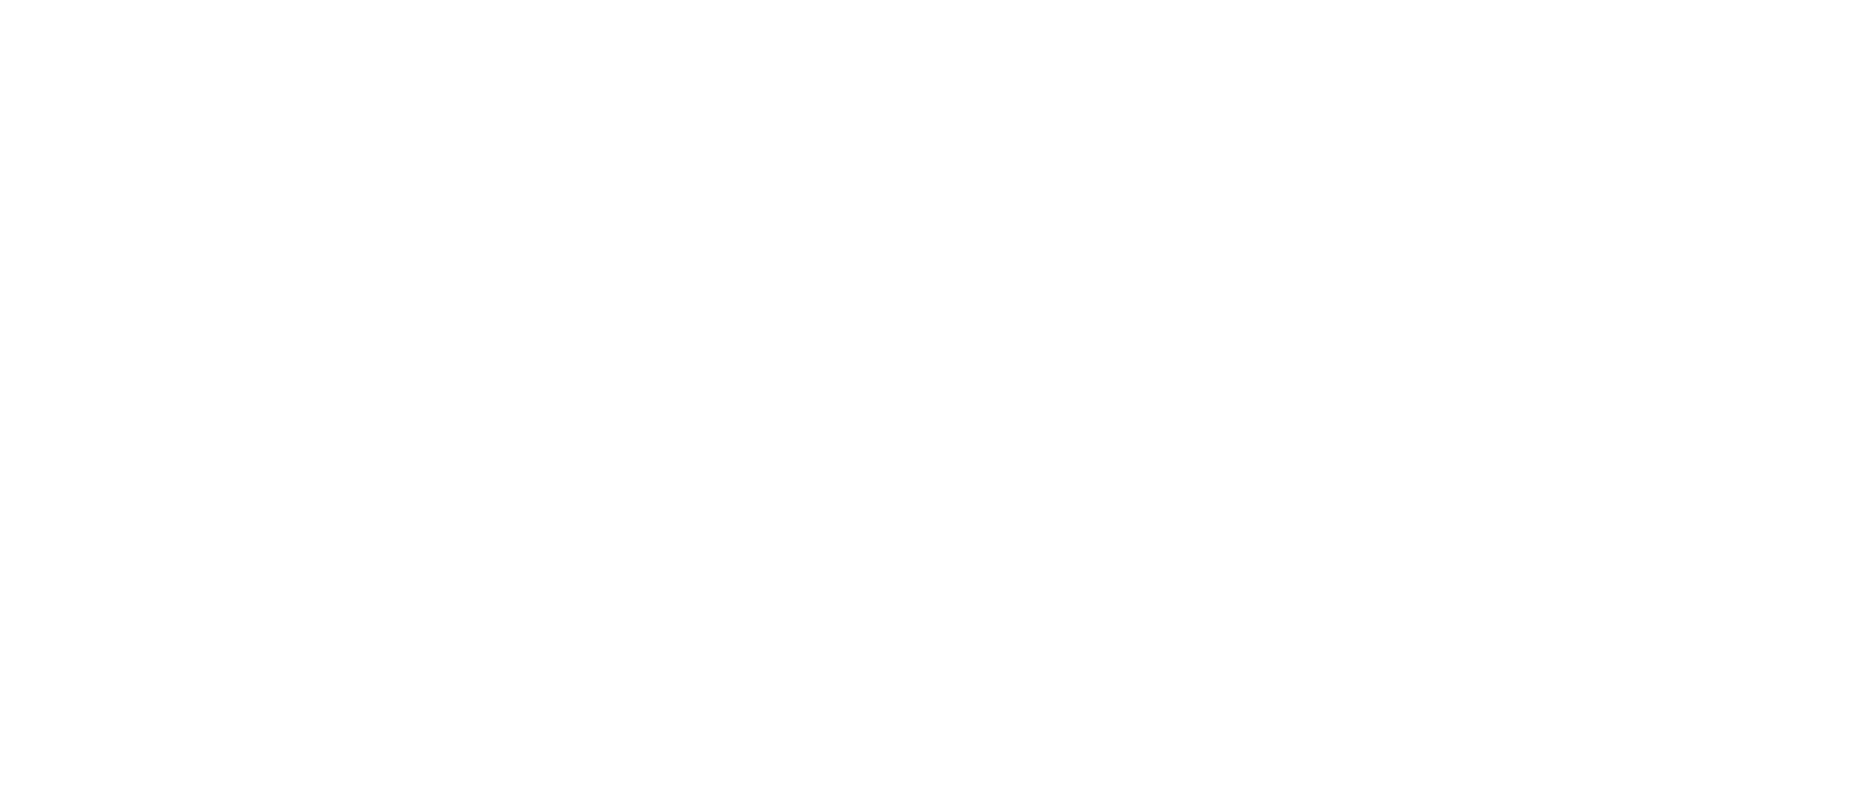 The Blind K